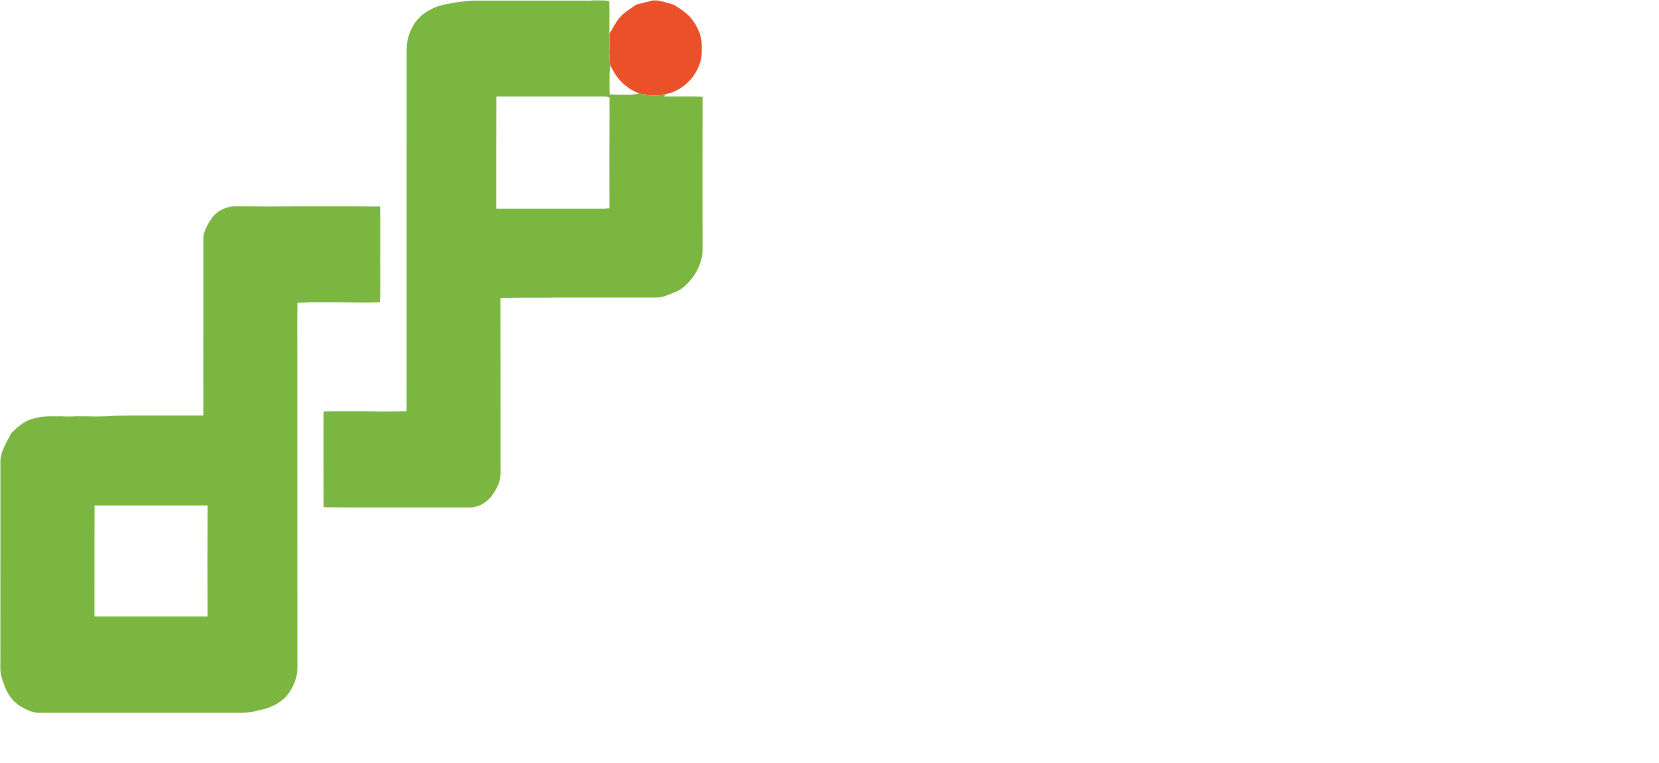 Burning Rock Biotech logo large for dark backgrounds (transparent PNG)